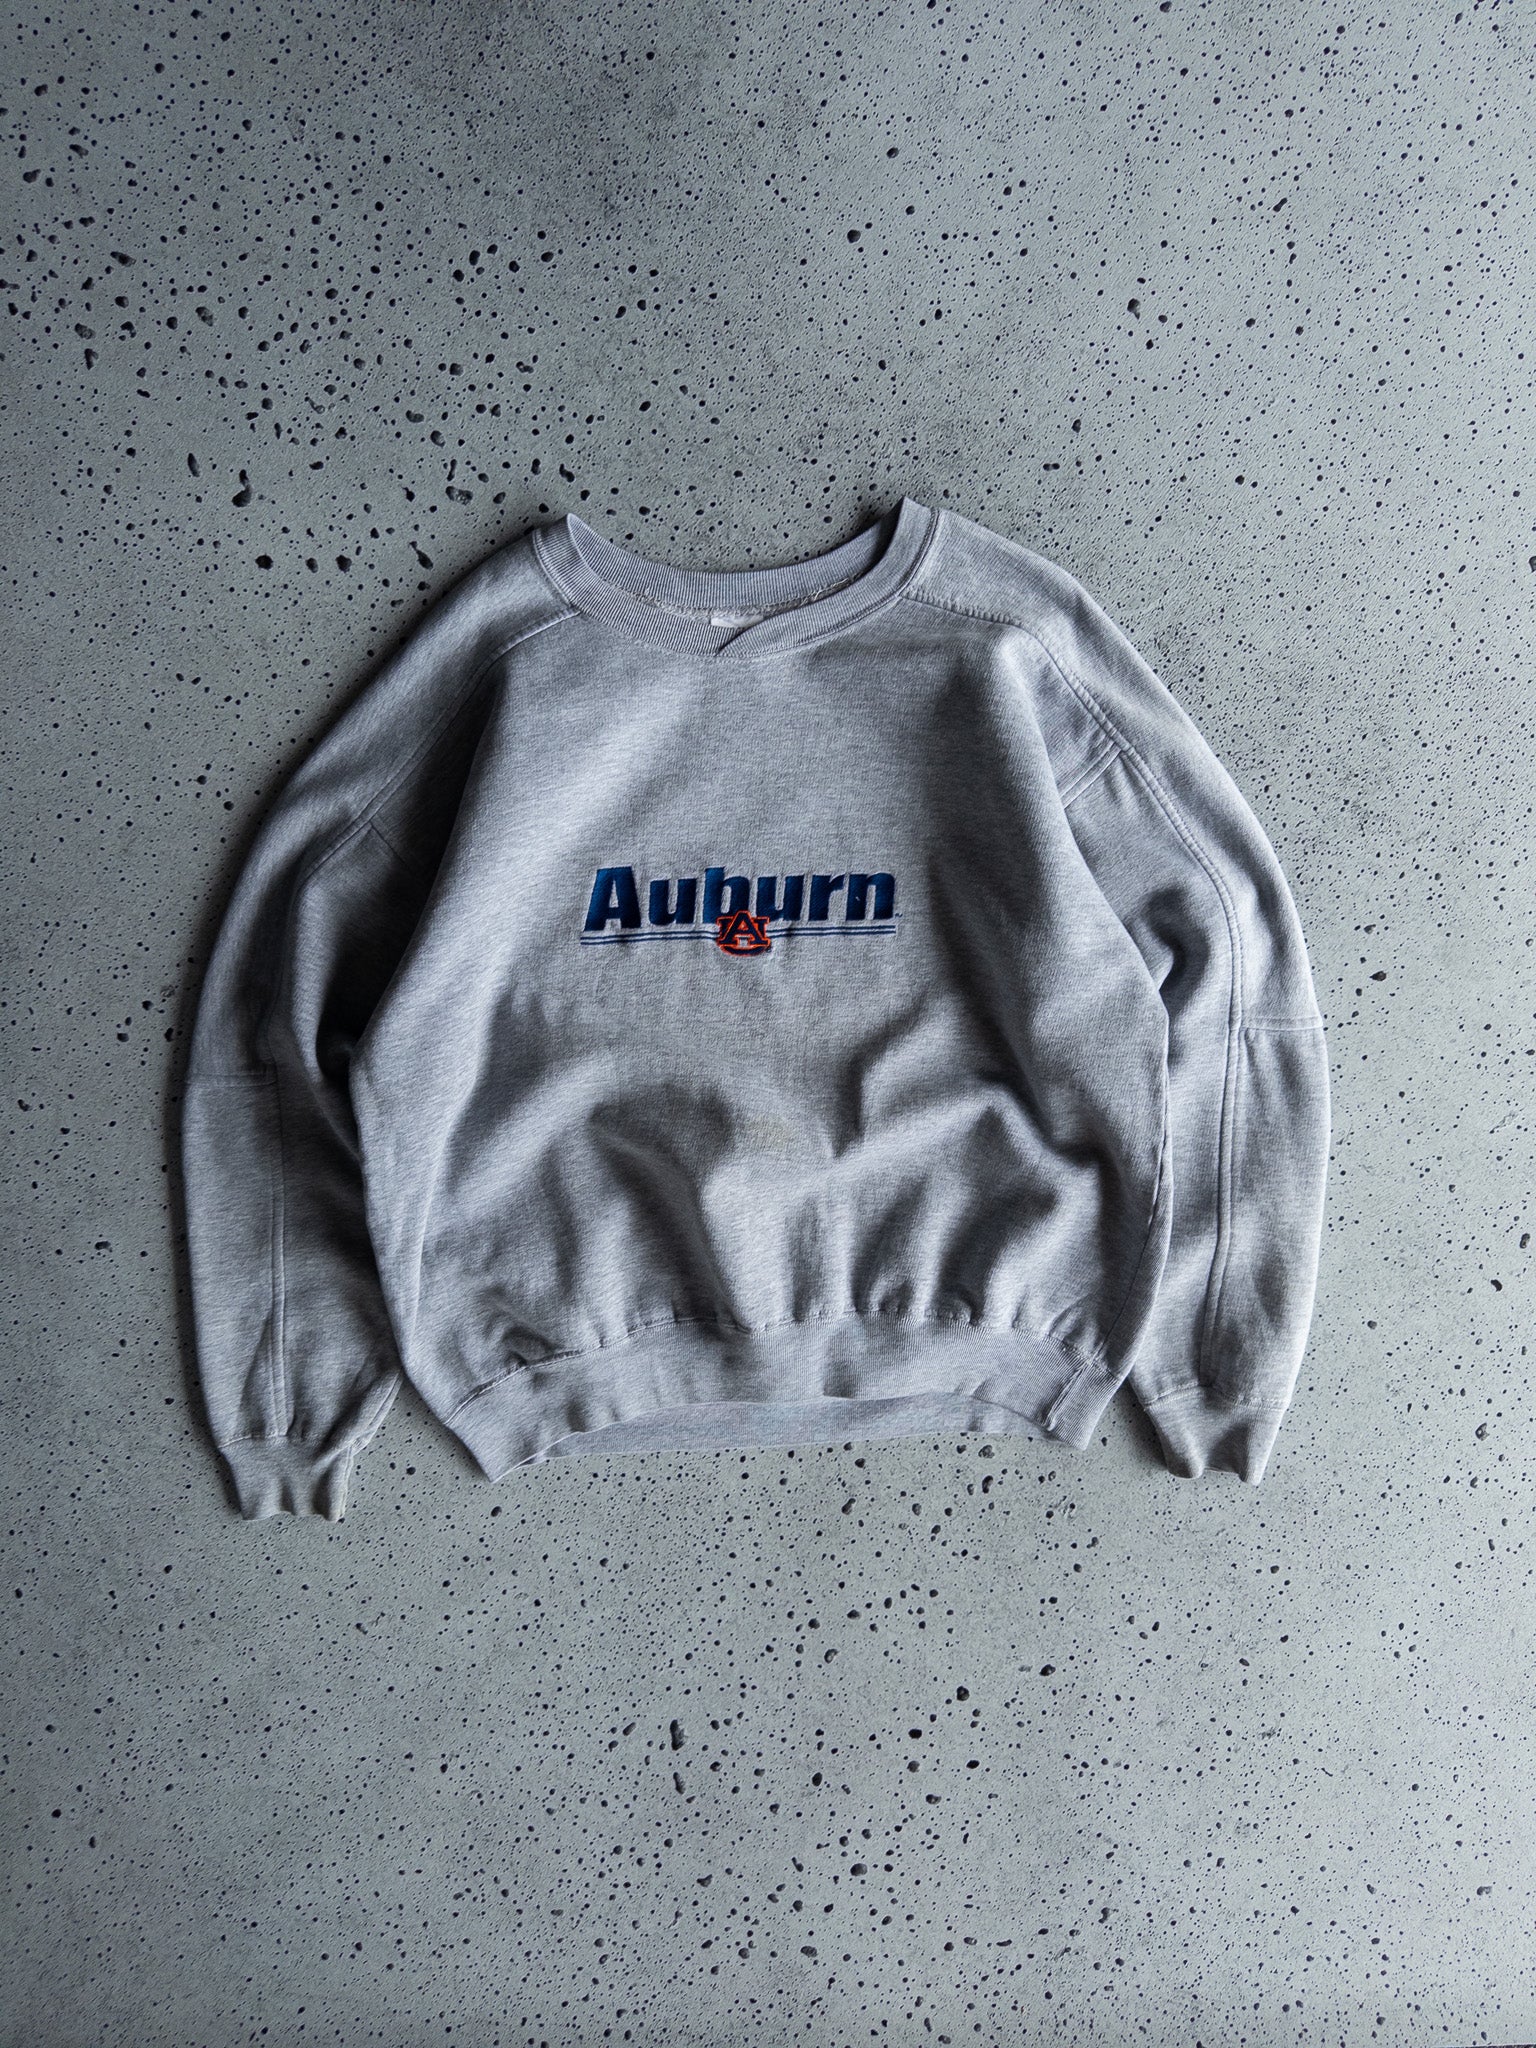 Vintage Auburn University Sweatshirt (L)